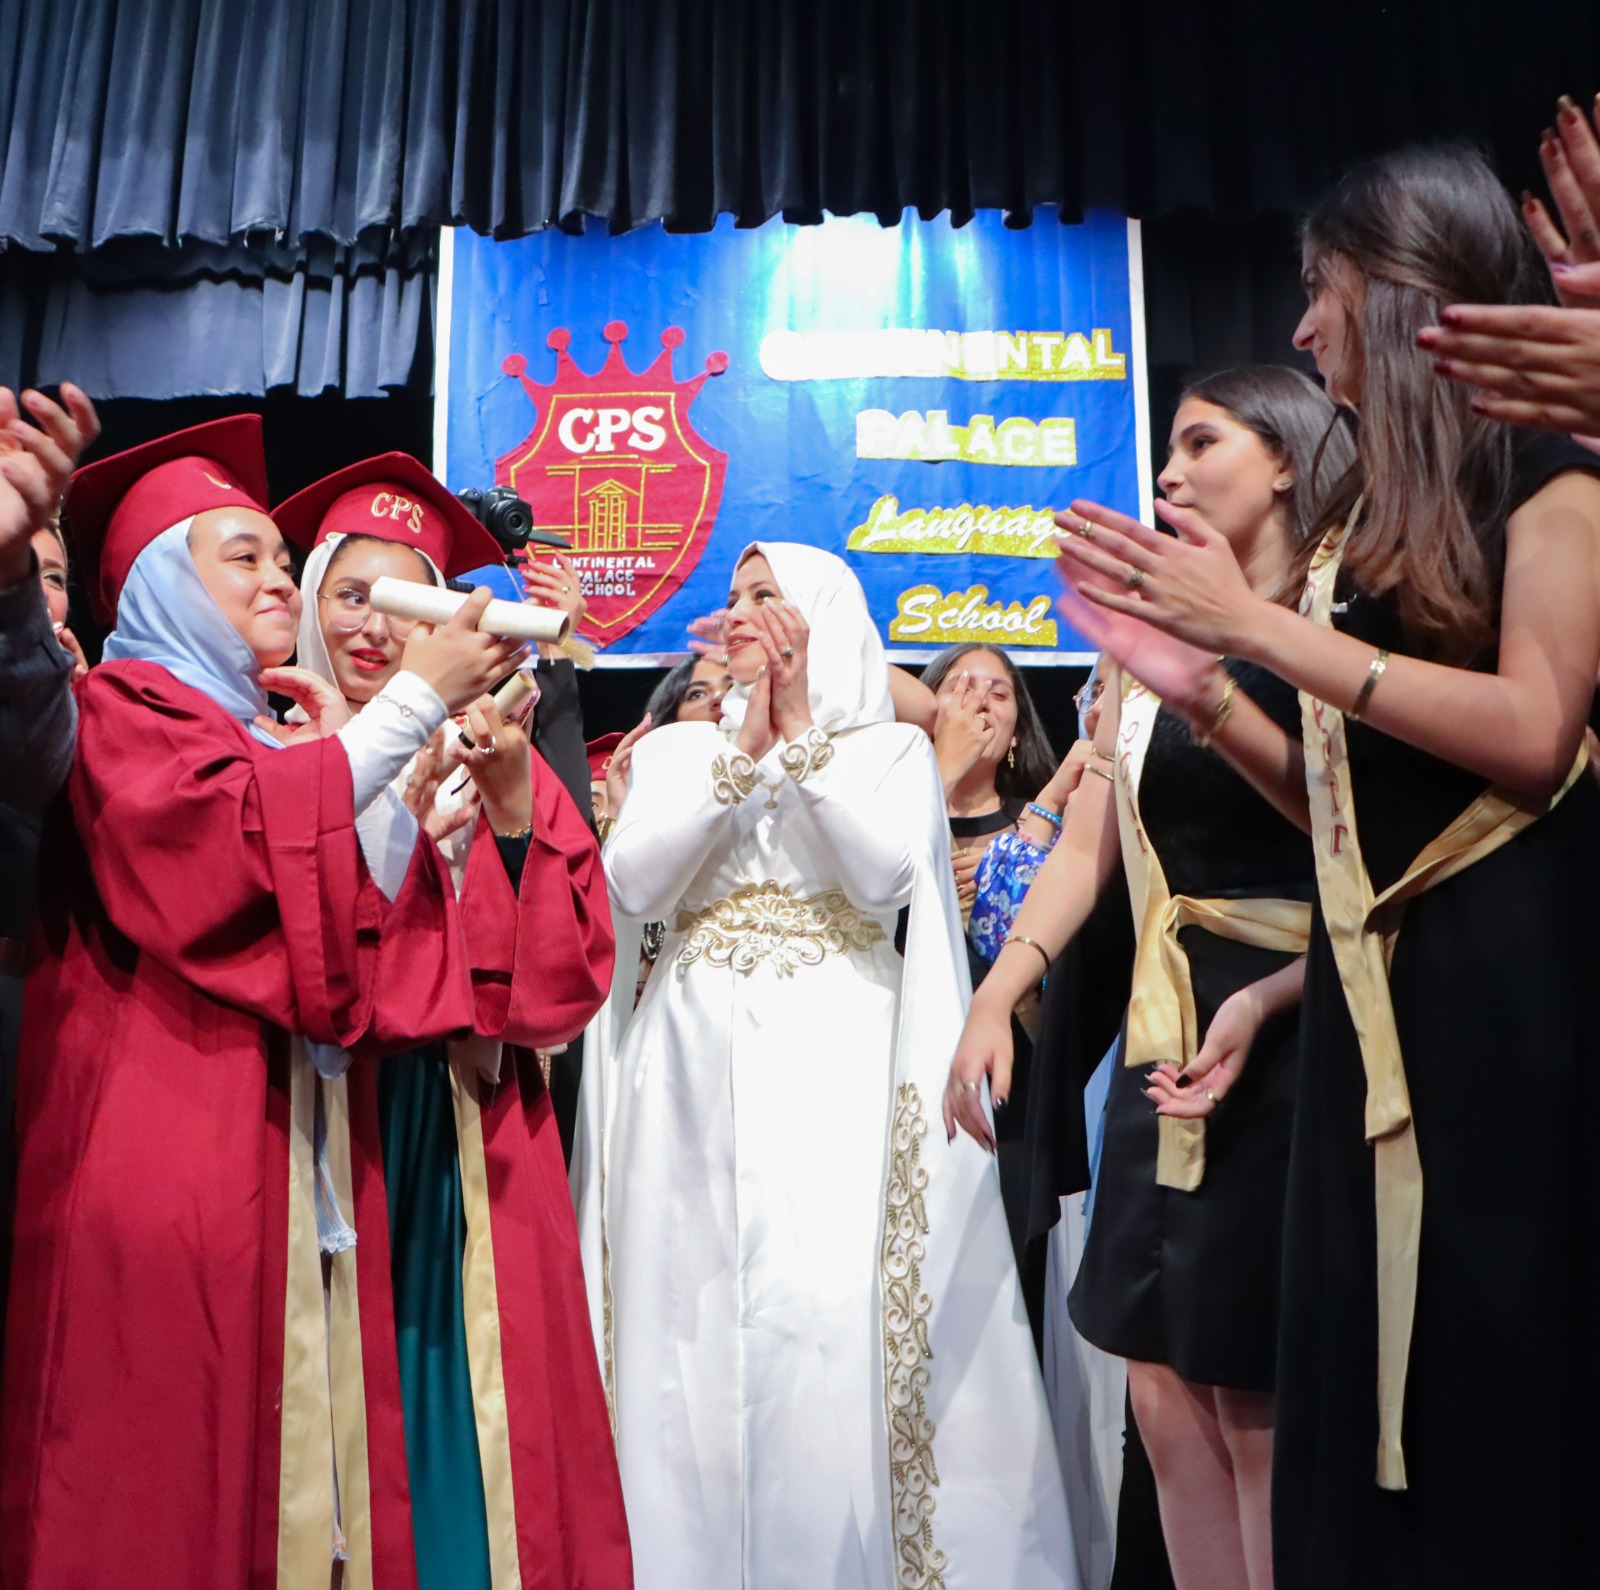 مسرح الحضارة المصرية يحتضن حفل تخرج طلاب مدرسة كونتيننتال بالاس (13)